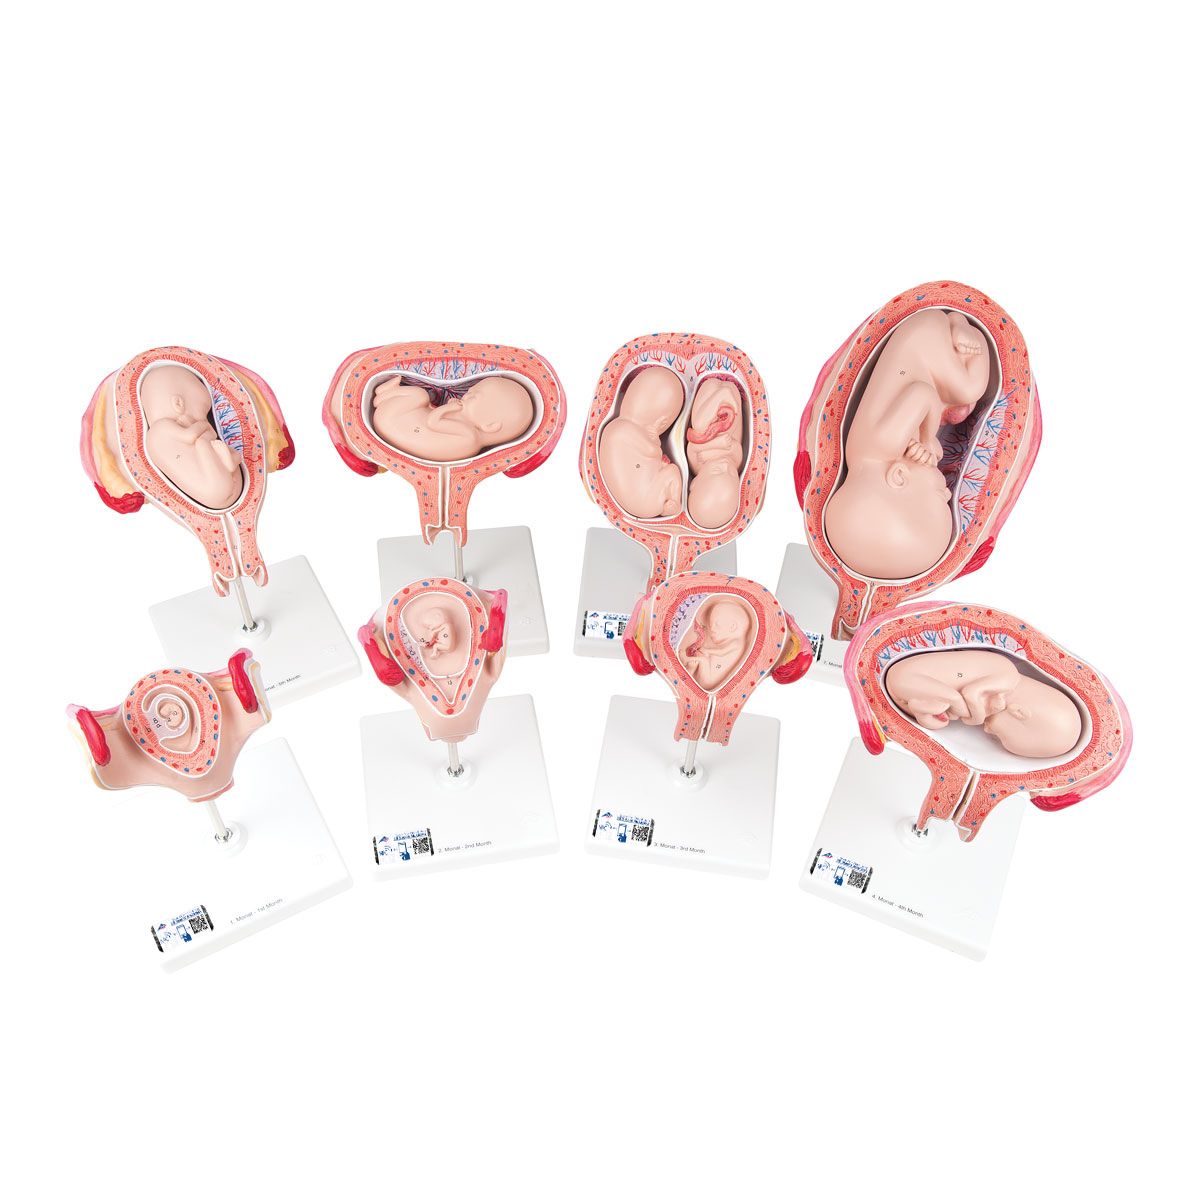 Schwangerschaftsmodell Serie - 3B Smart Anatomy, Bestellnummer 1018627, L10, 3B Scientific